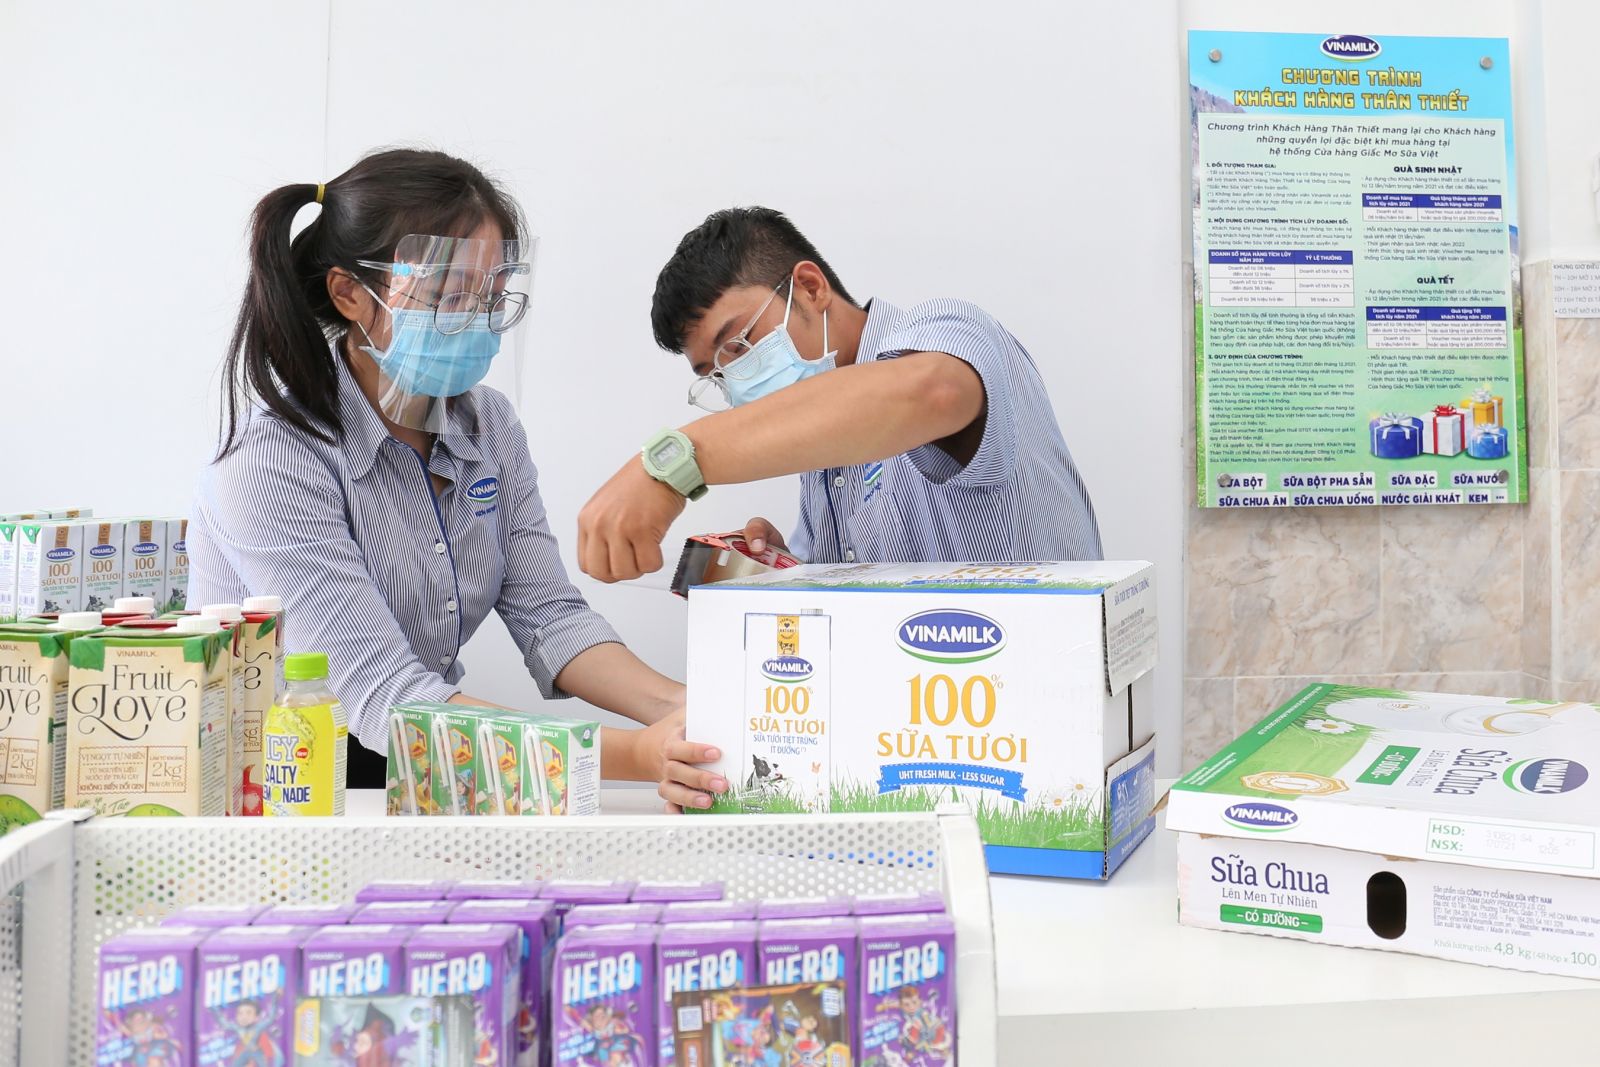 Hệ thống cửa hàng Giấc Mơ Sữa Việt của Vinamilk tăng cường hình thức bán hàng trực tuyến, giao hàng tại nhà để đáp ứng nhu cầu của người dân